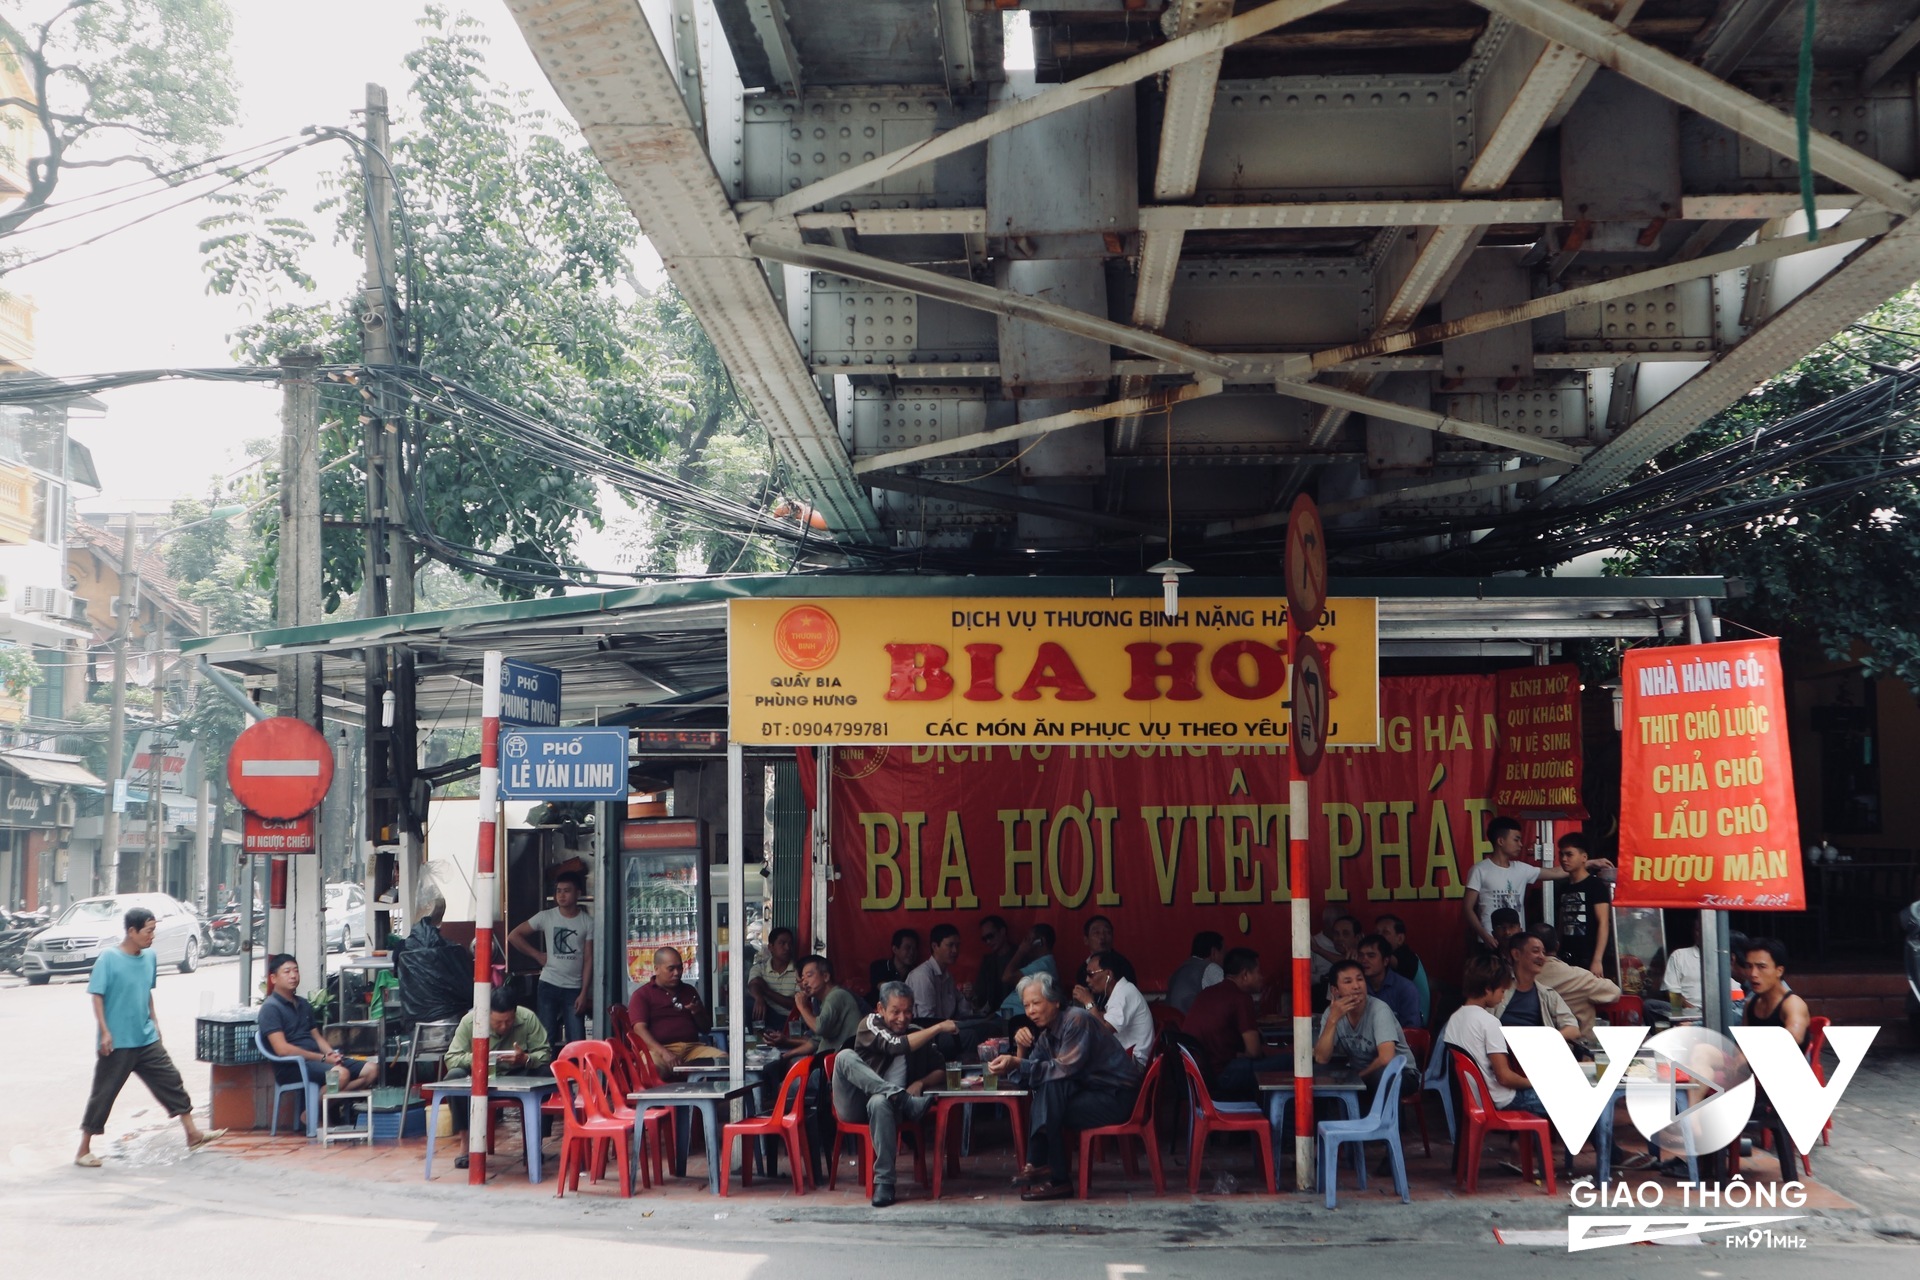 Một quán bia mở trên vỉa hè, dưới gầm cầu trên phố Phùng Hưng lúc nào cũng đông khách. Người Hà Nội thích ngồi ăn uống vỉa hè, vừa bình dân lại có thể ngắm nghía phố phường, giao lưu với bạn bè...